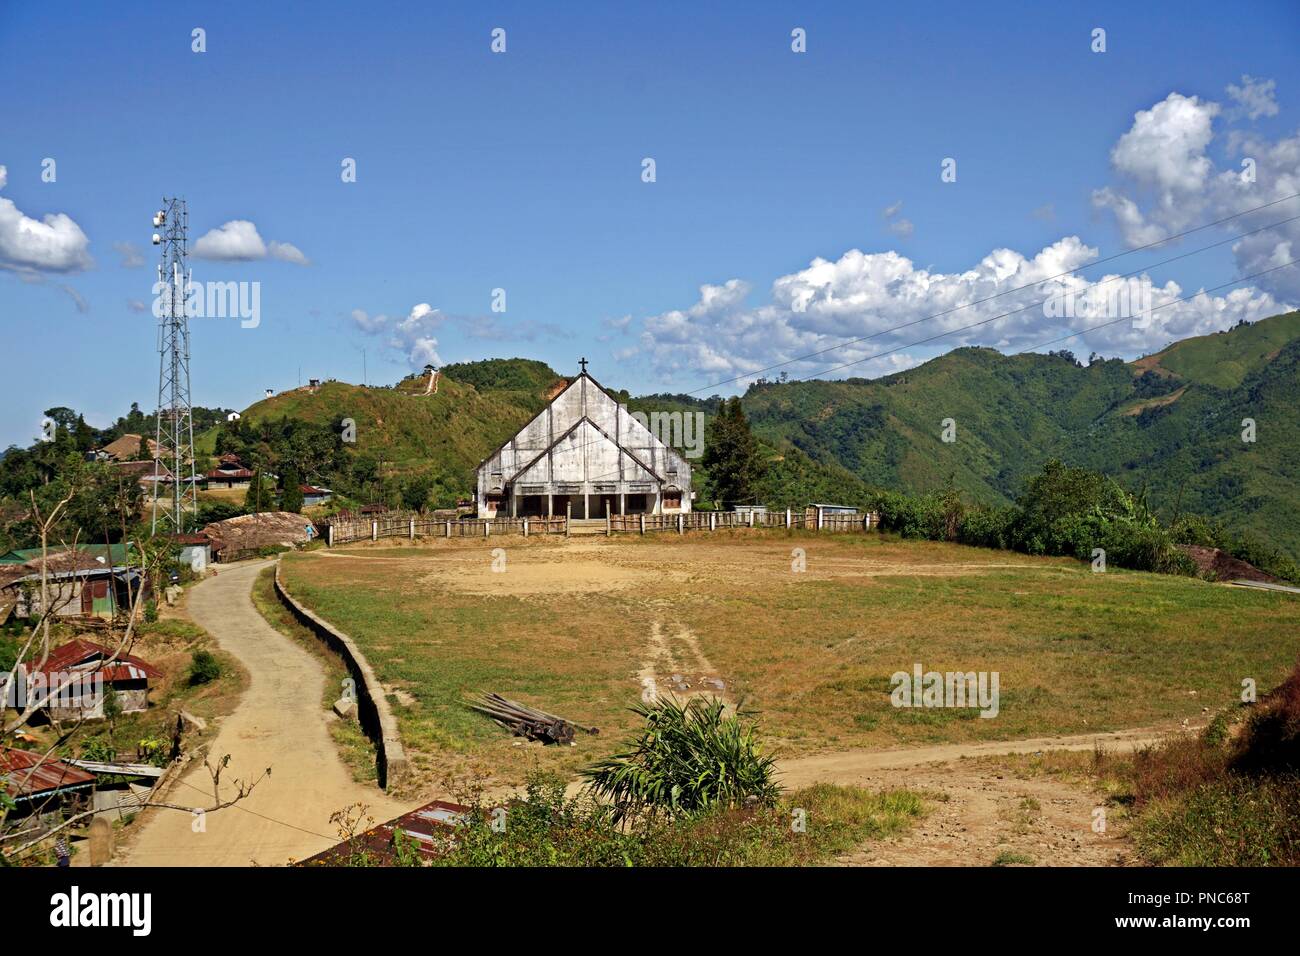 wodden catholic church in Longwa, Nagaland, India Stock Photo